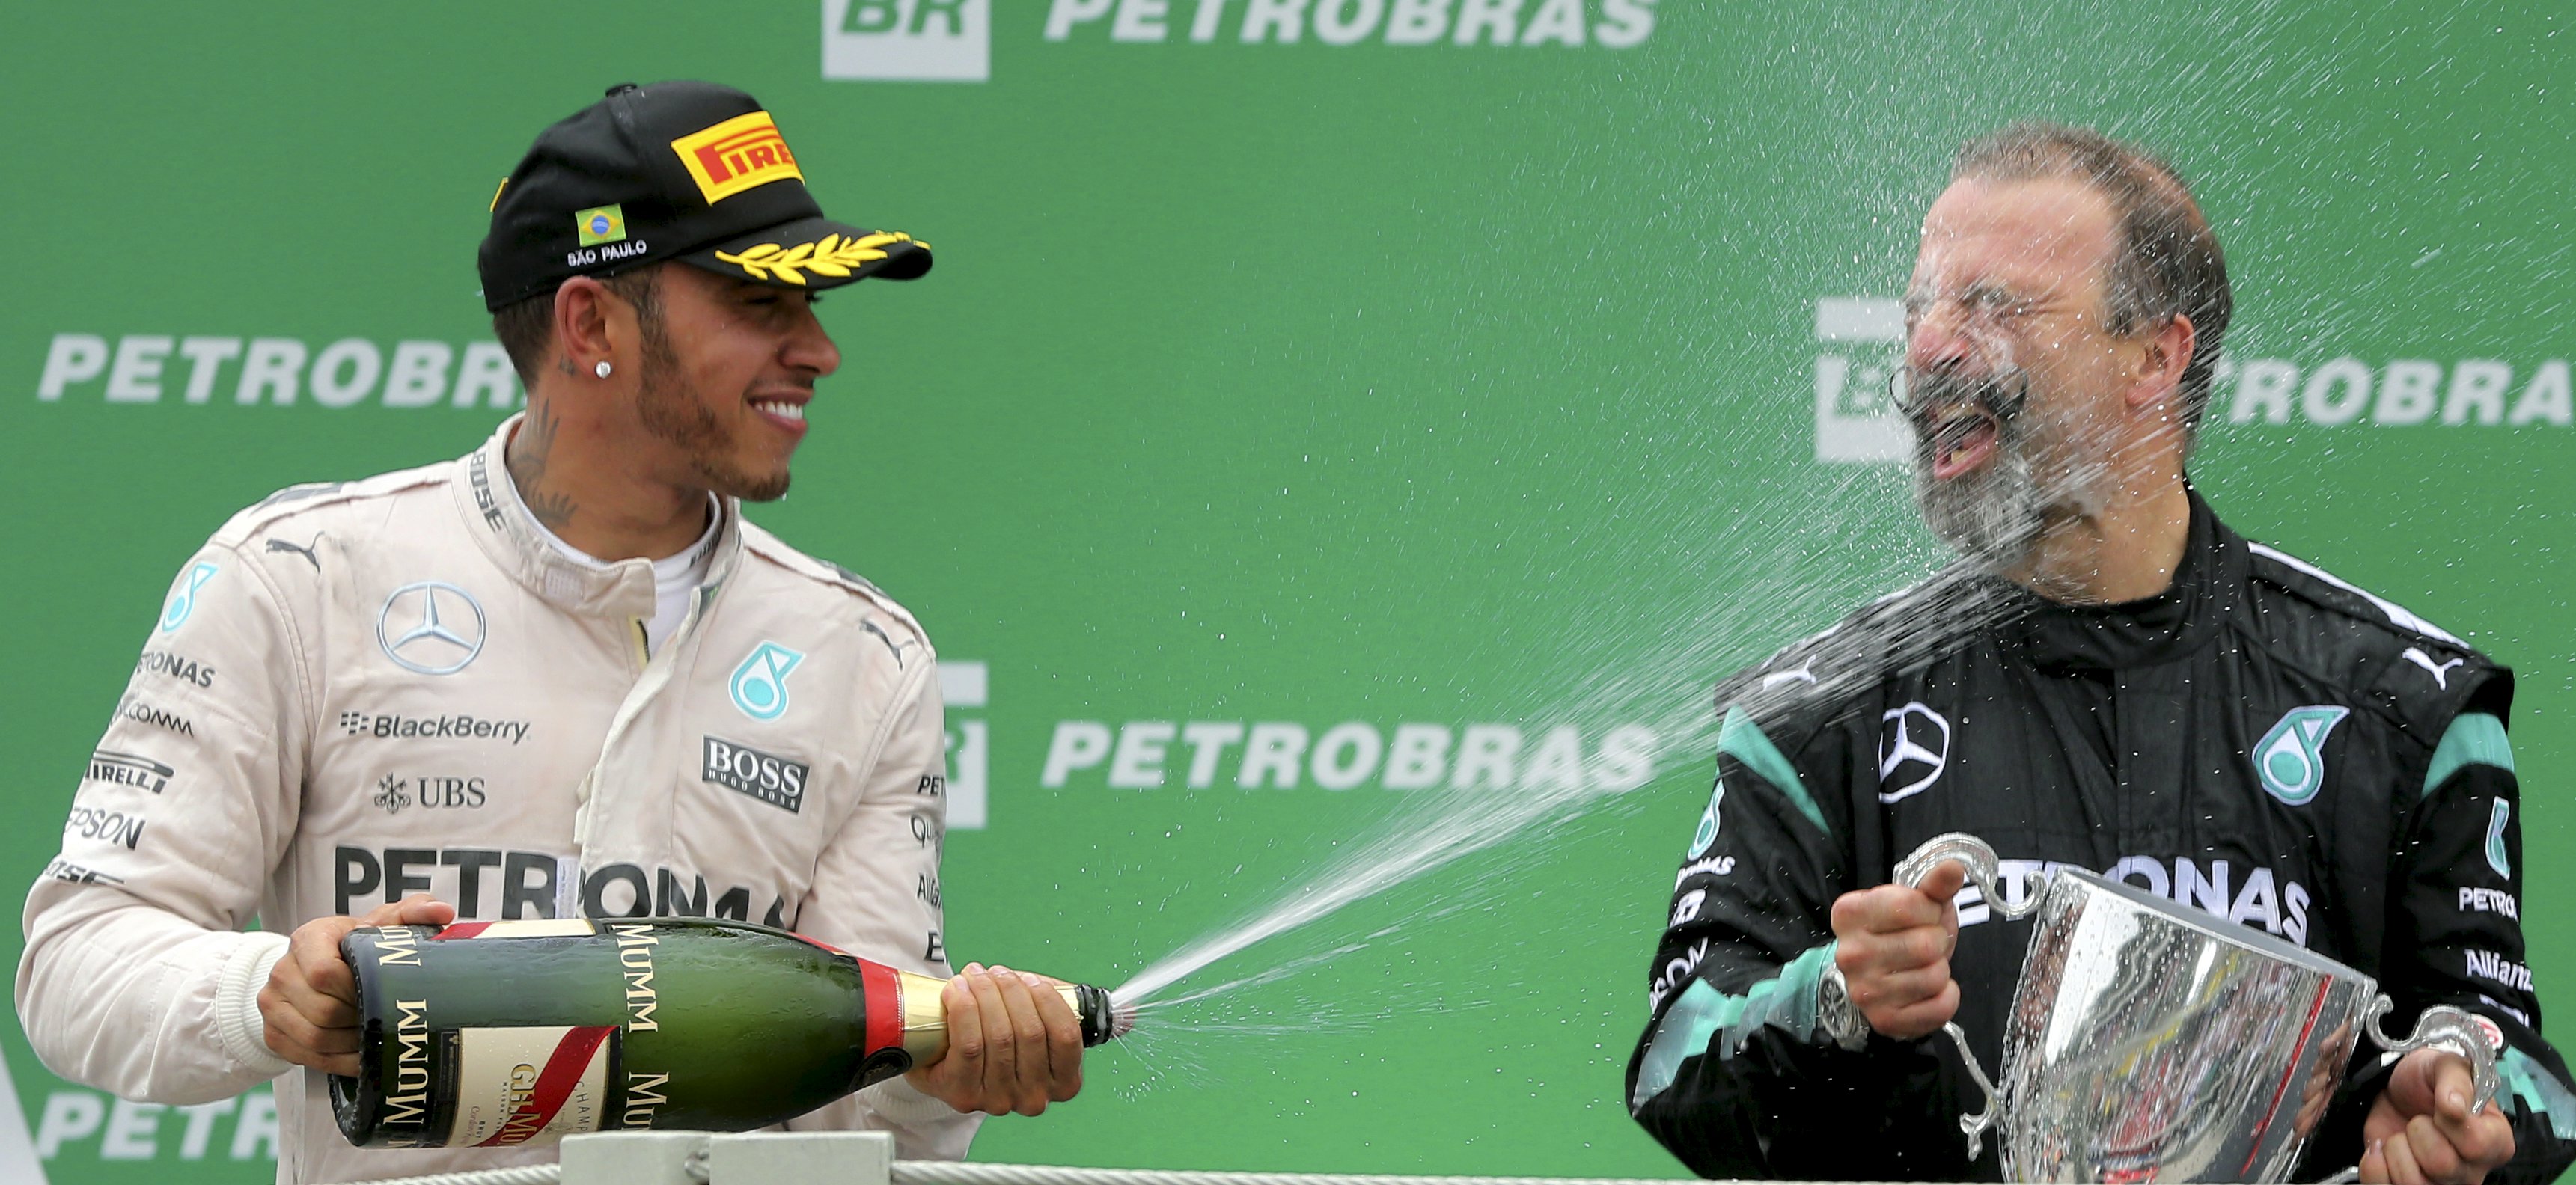 Pembalap Mercedes Formula One Lewis Hamilton (kiri) dari Inggris bergembira dengan teknisi tim balap Mercedes James Weddel setelah Grand Prix F1 Brazil di Sao Paulo, Brazil, Minggu (15/11). ANTARA FOTO/REUTERS/Paulo Whitaker.